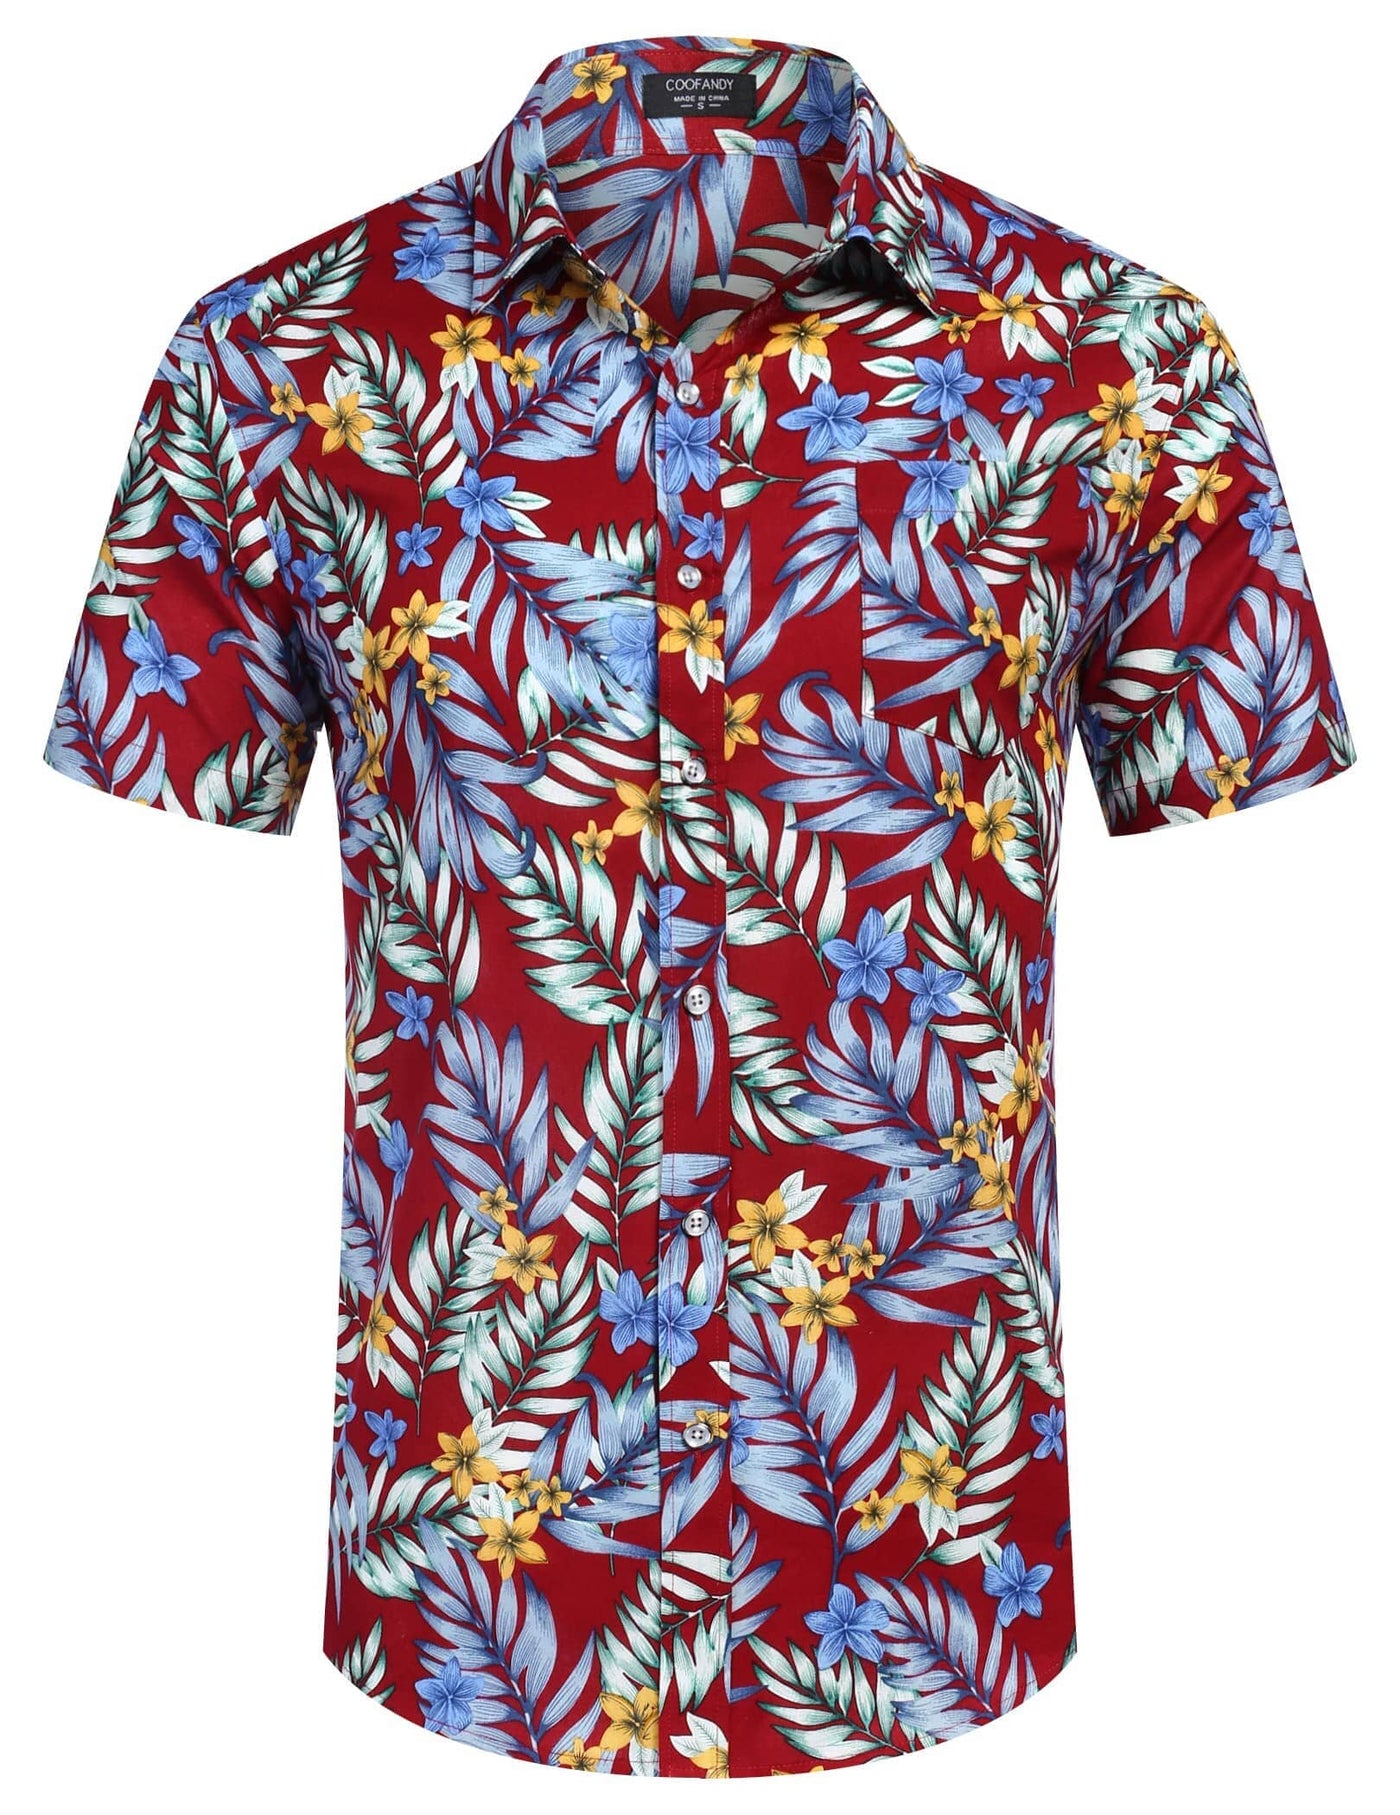 Coofandy Hawaiian Floral Shirts (US Only) Shirts coofandy 